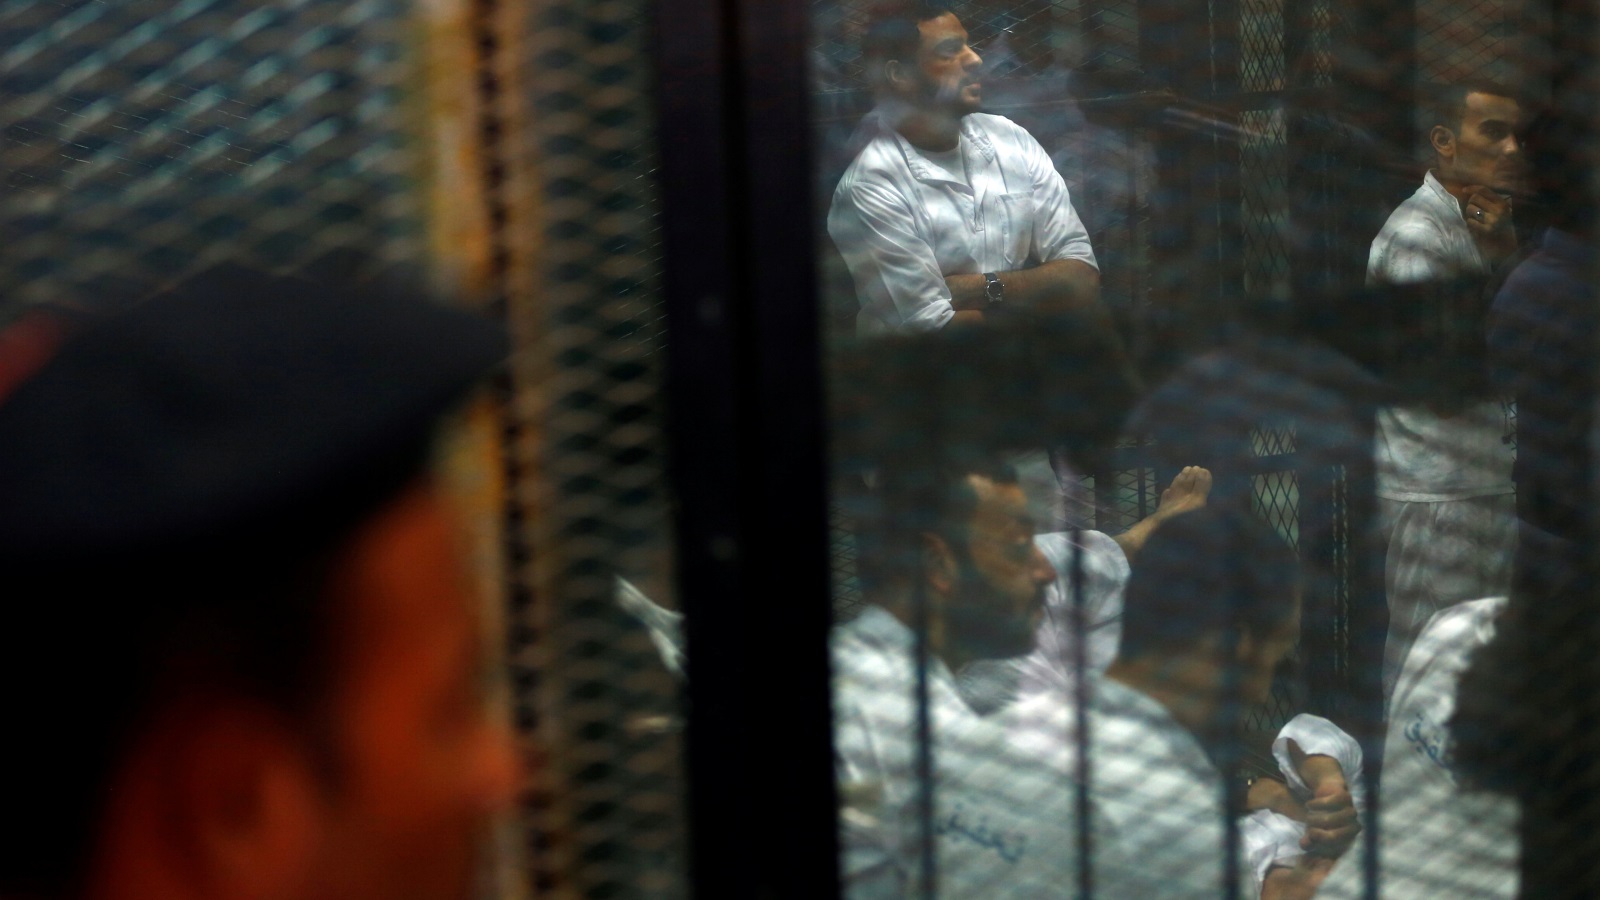  المنظمة الحقوقية قالت إن جرائم التعذيب داخل سجون مصر قد ترقى إلى جرائم ضد الإنسانية (رويترز)